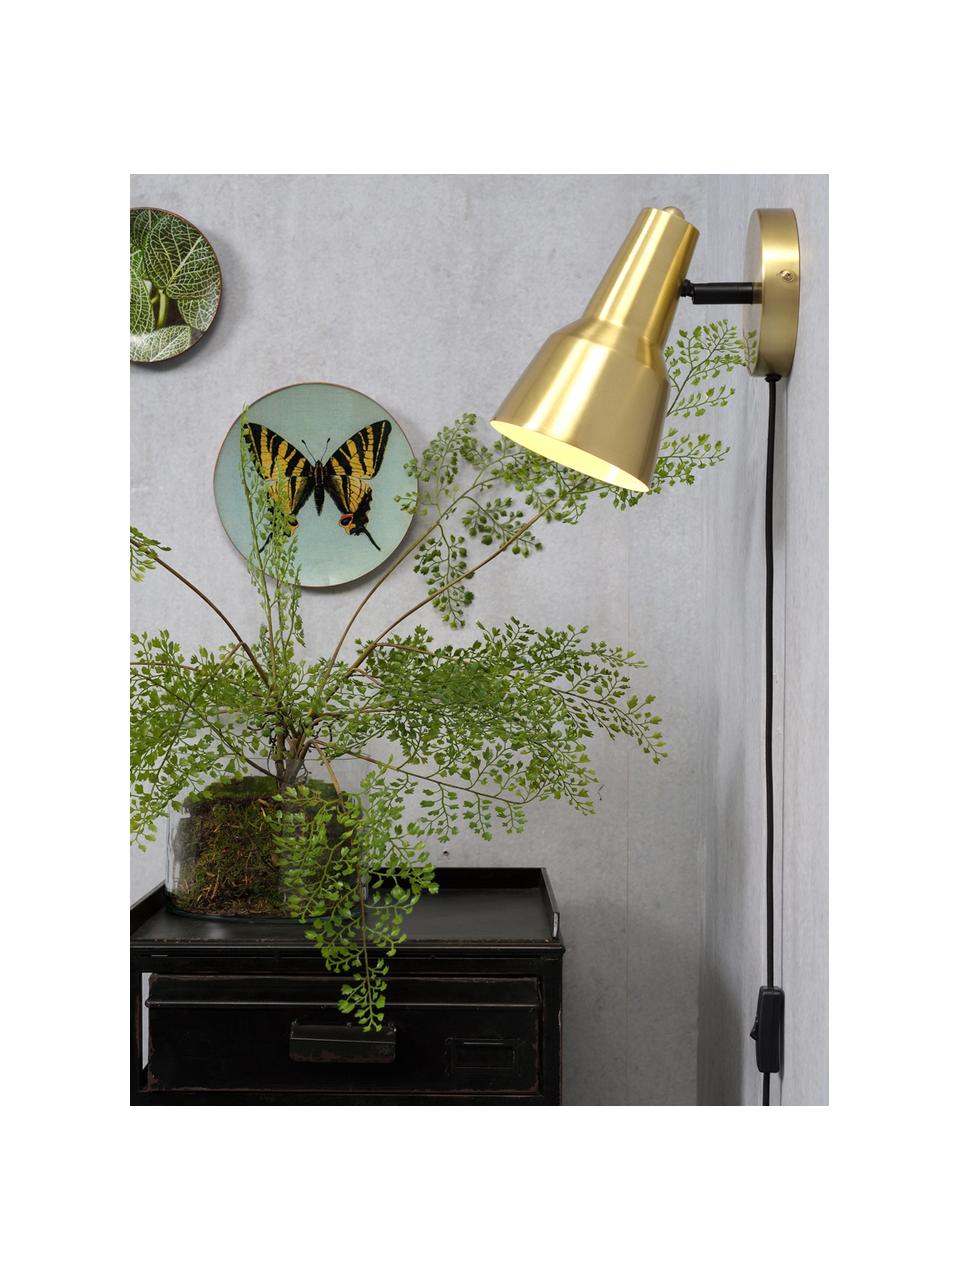 Wandleuchte Valencia mit Stecker, Lampenschirm: Metall, lackiert, Gestell: Metall, lackiert, Goldfarben, 13 x 20 cm